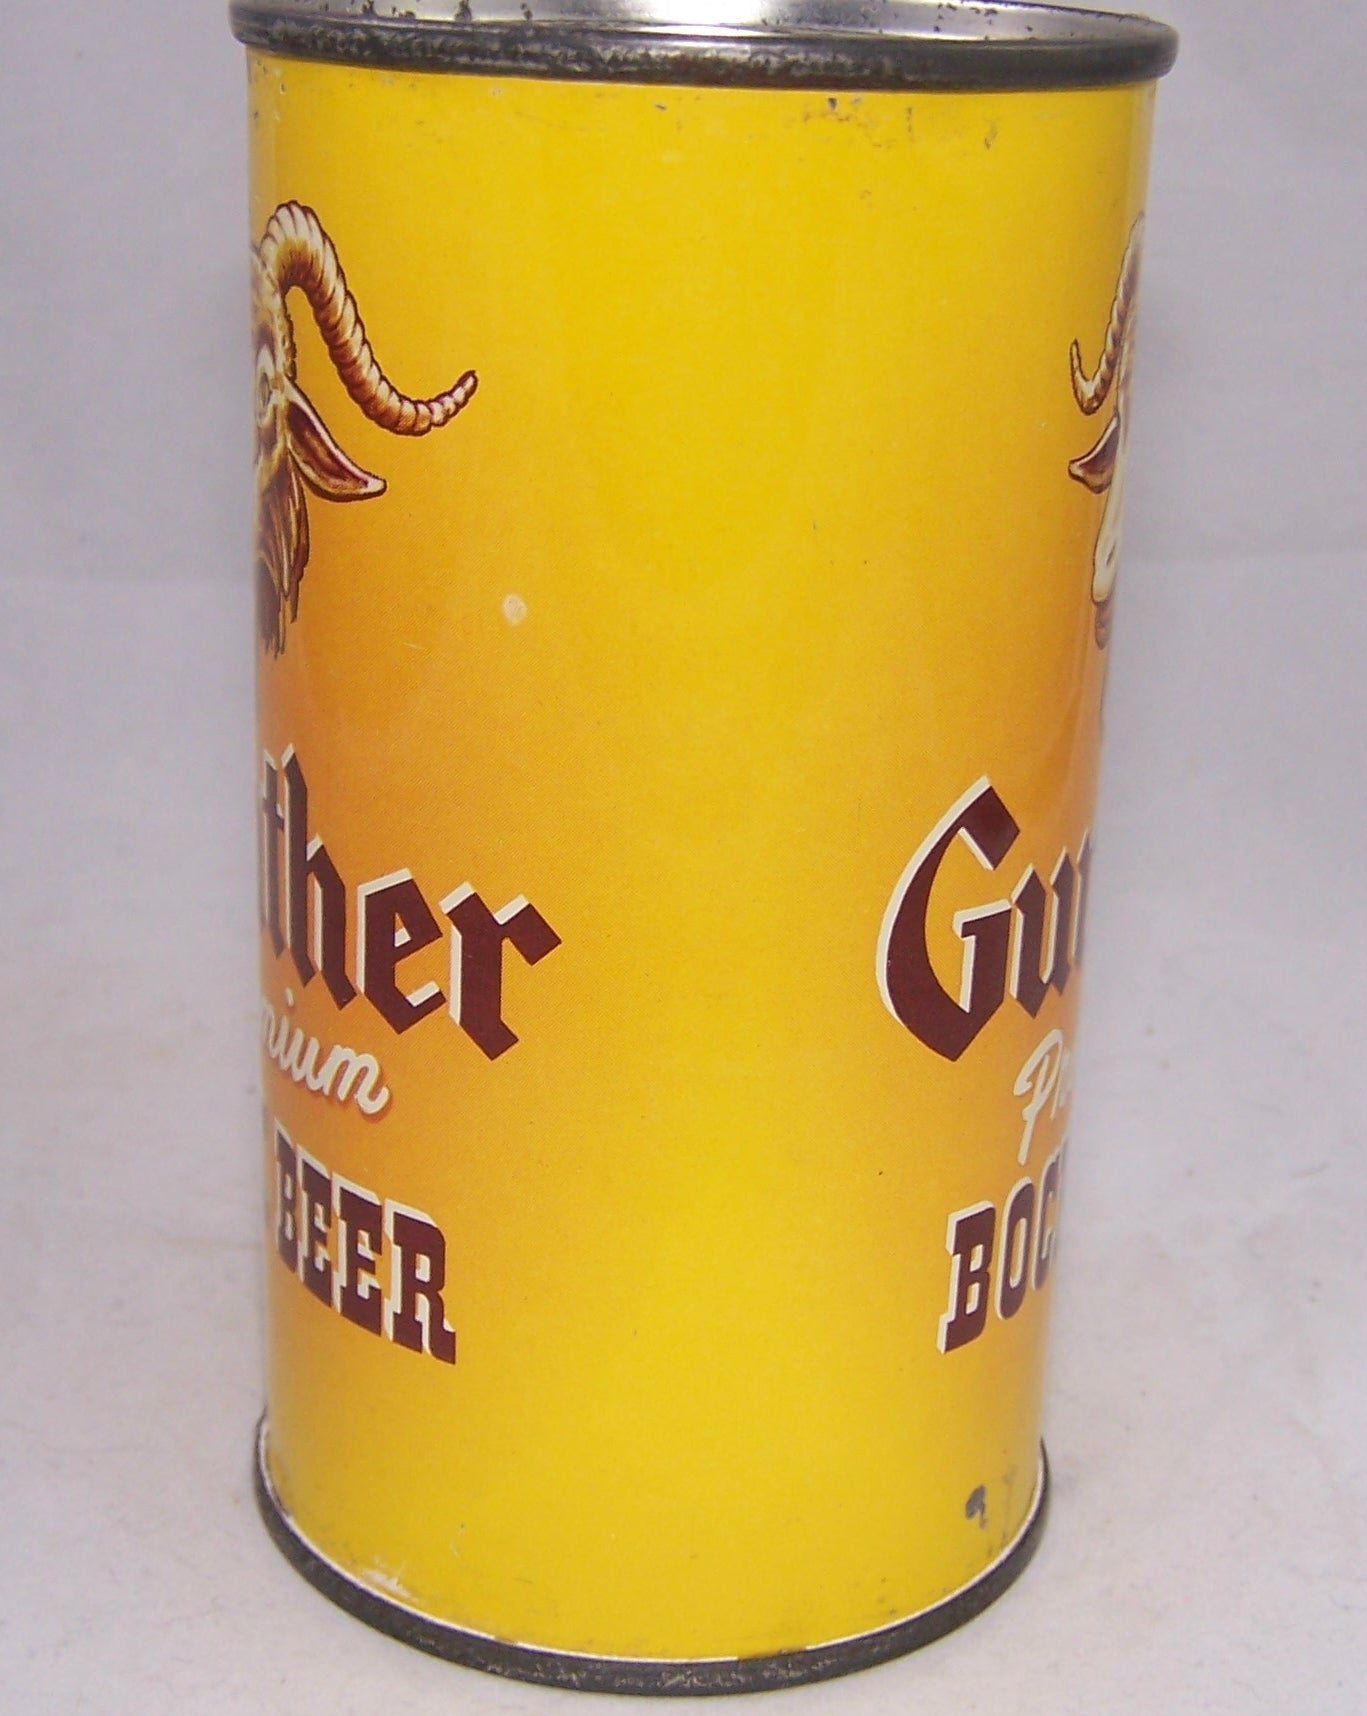 Gunther Premium Bock Beer, USBC 78-31, Grade 1 Sold on 09/10/17